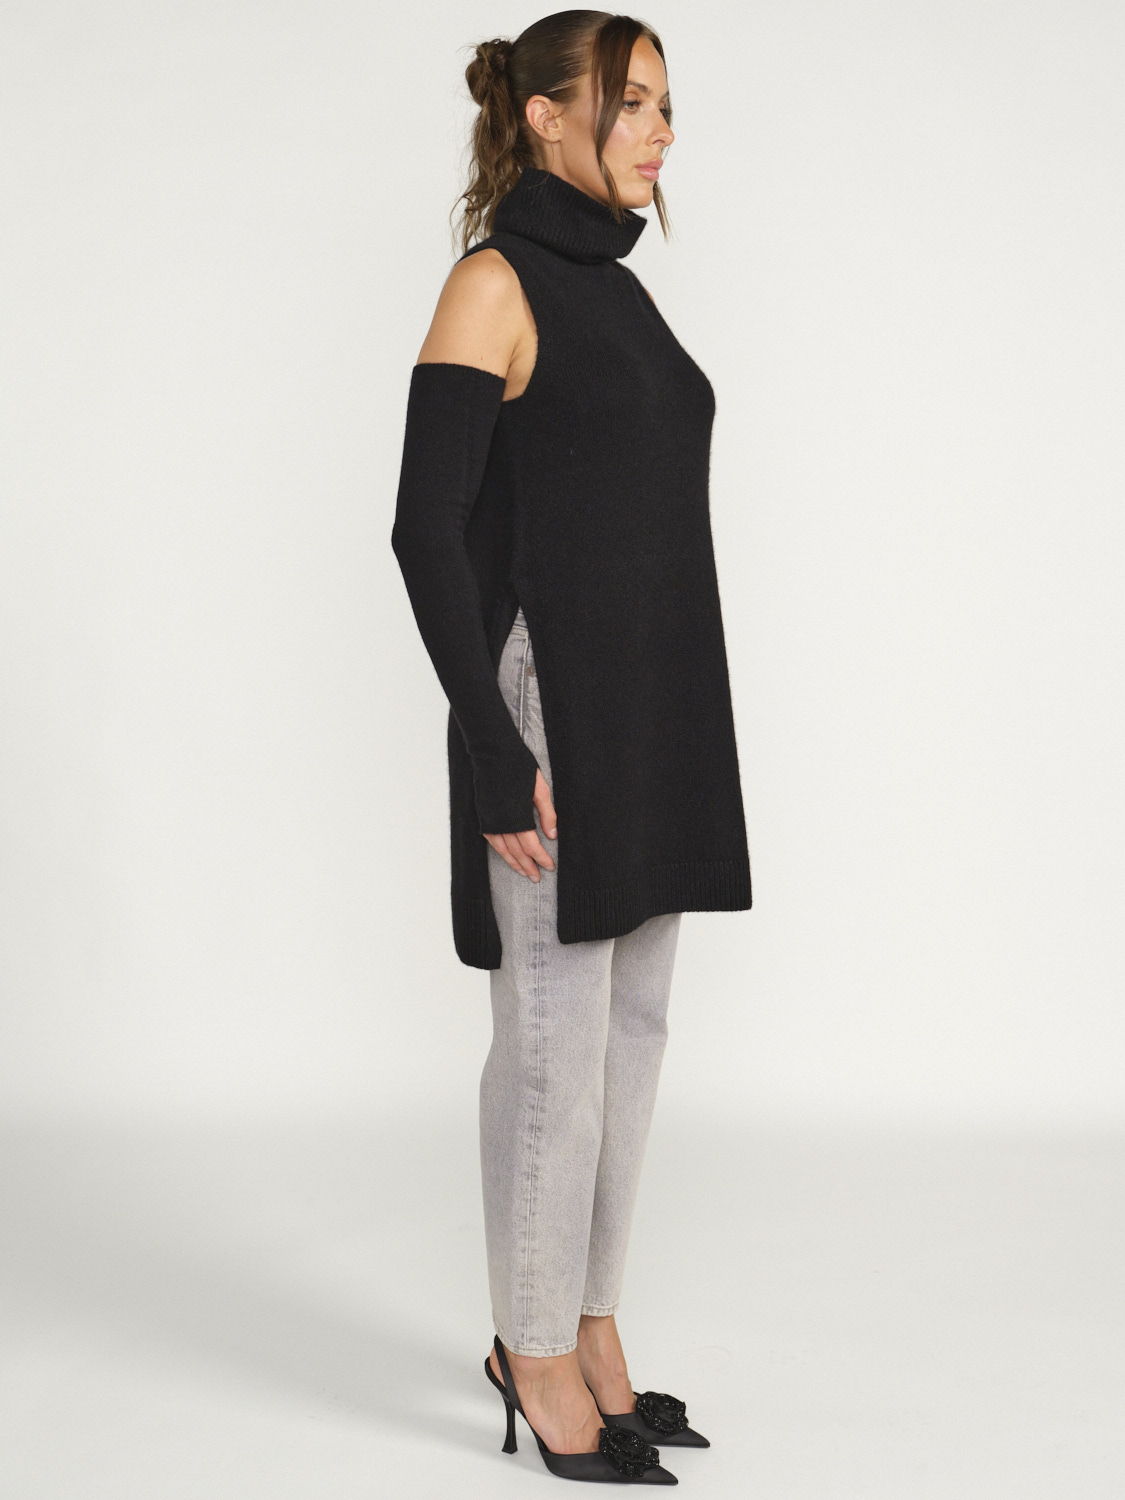 Iris von Arnim Svea - Sleeveless dress in cashmere black M